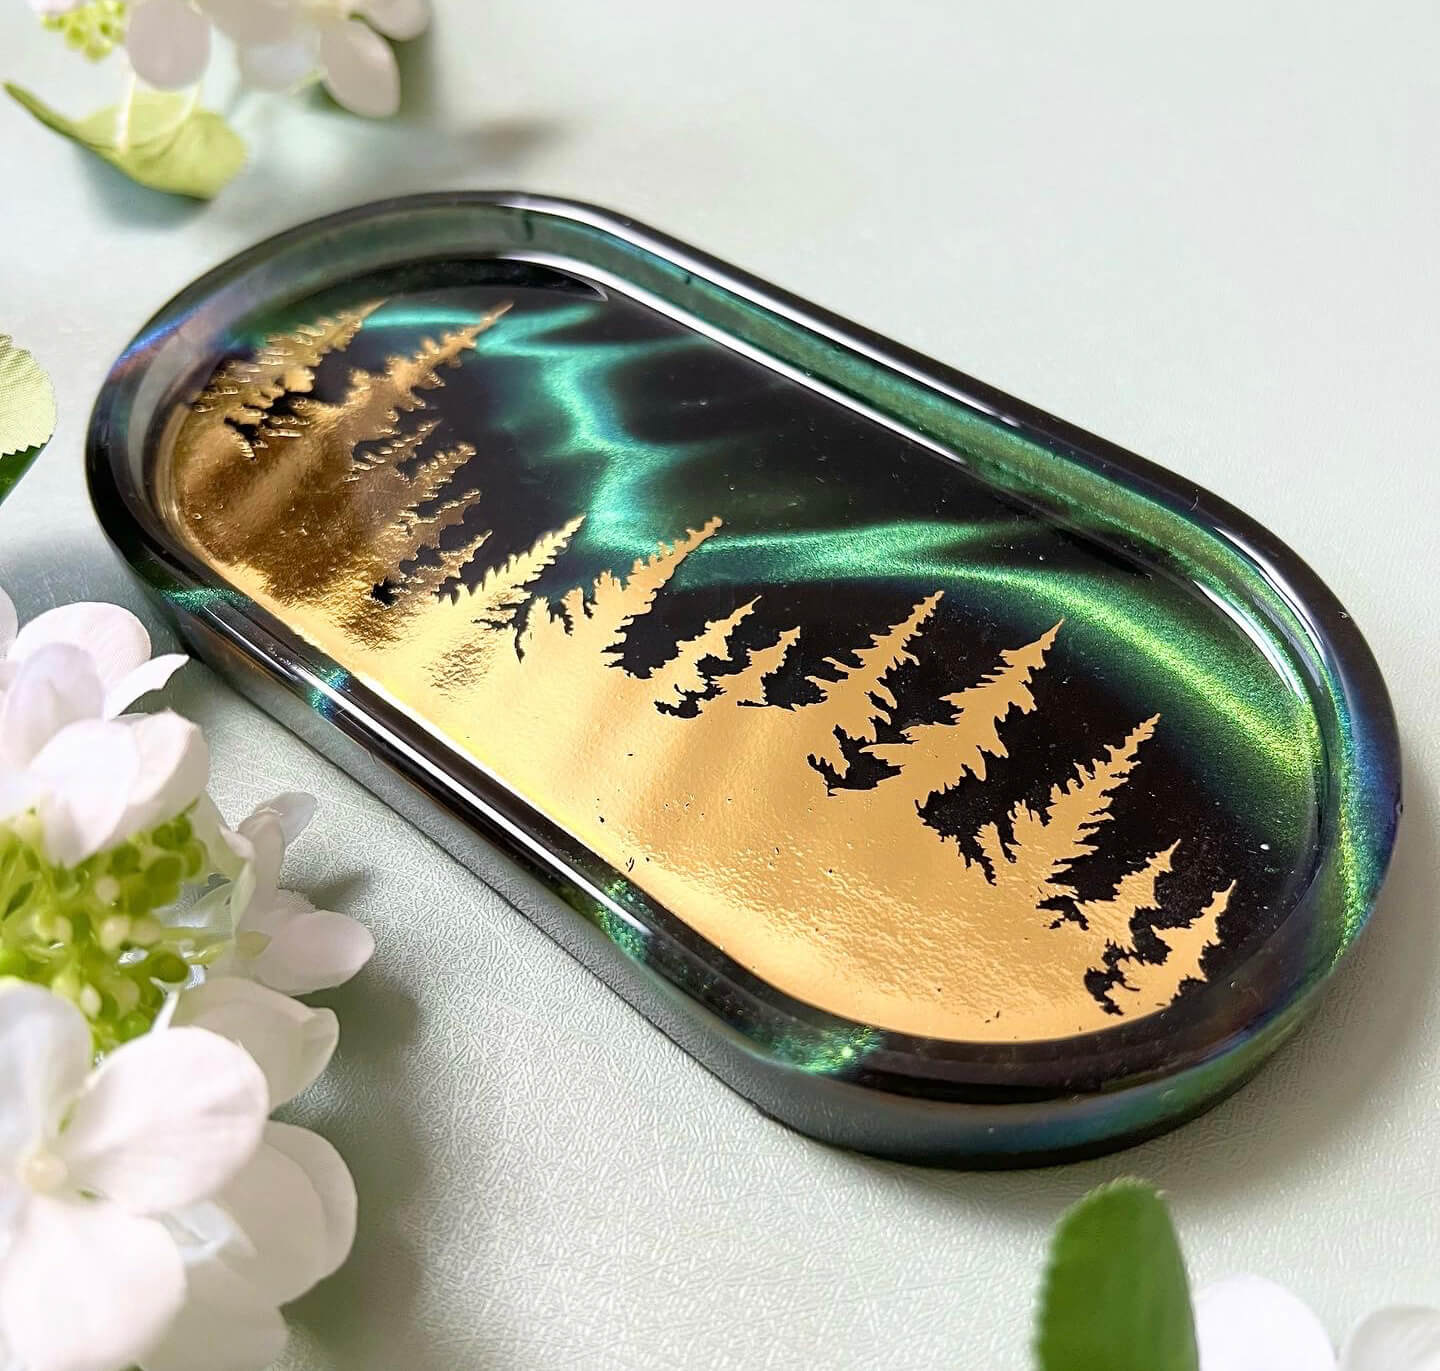 A tray Ella Huang made inspired by aurora borealis